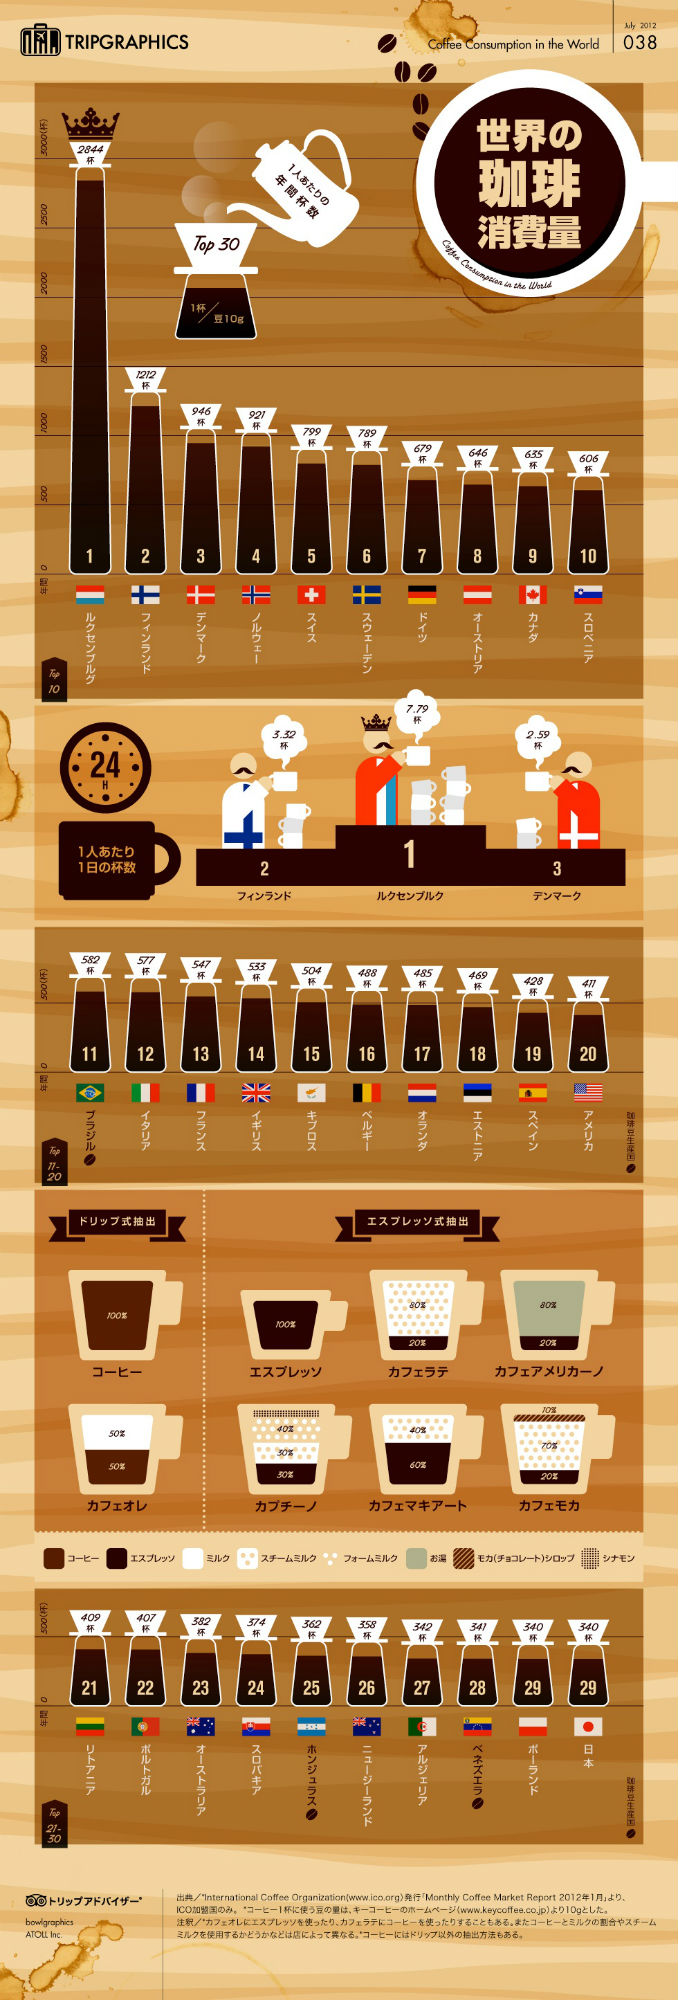 世界で一番コーヒーを飲む国はどこですか？